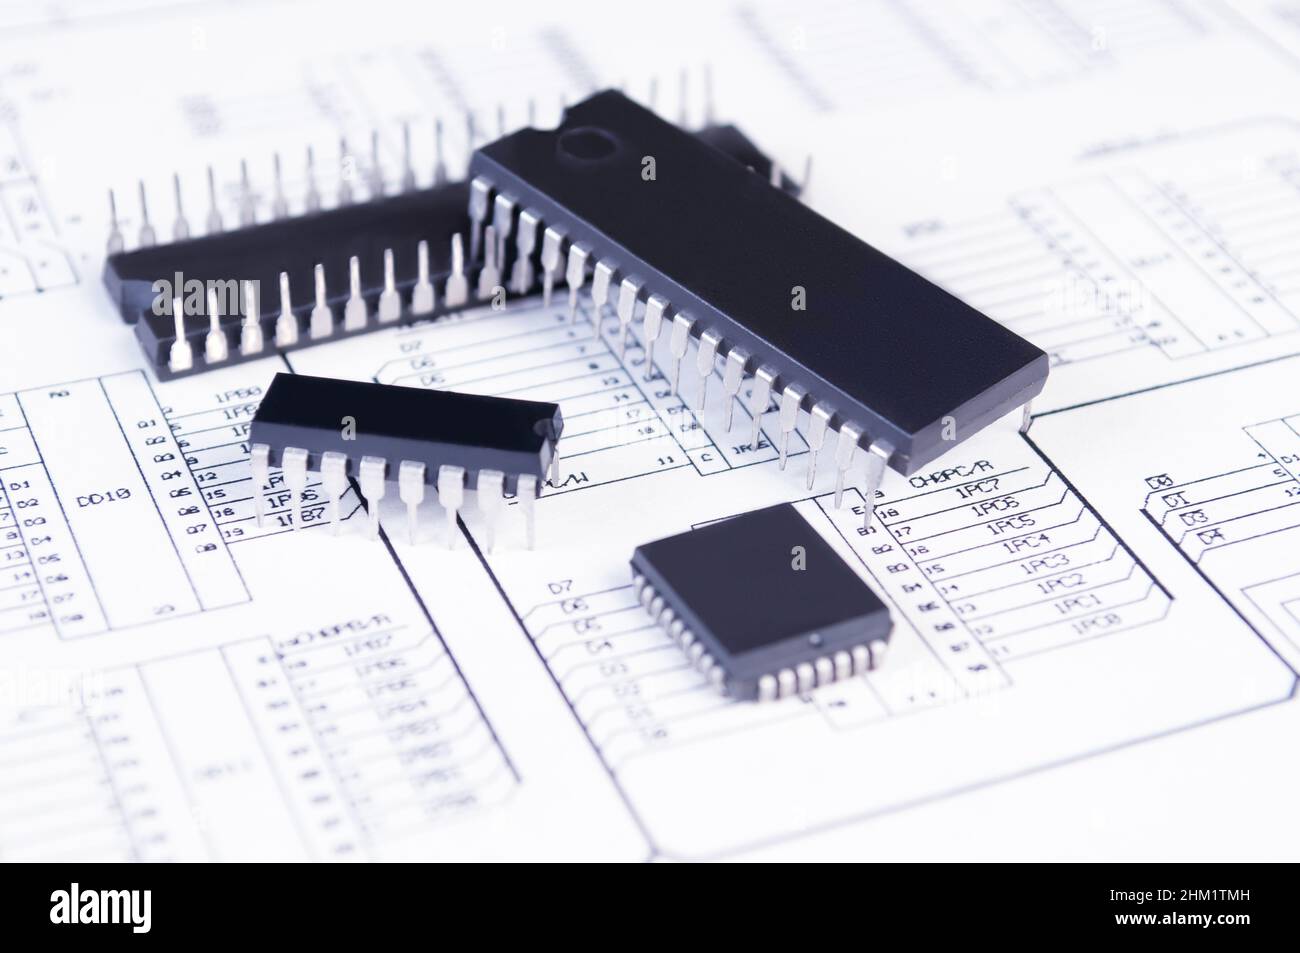 Elektronikkomponenten auf dem Hintergrund des Schaltplans. Konzept für die Entwicklung und Konstruktion von elektronischen Geräten. Stockfoto